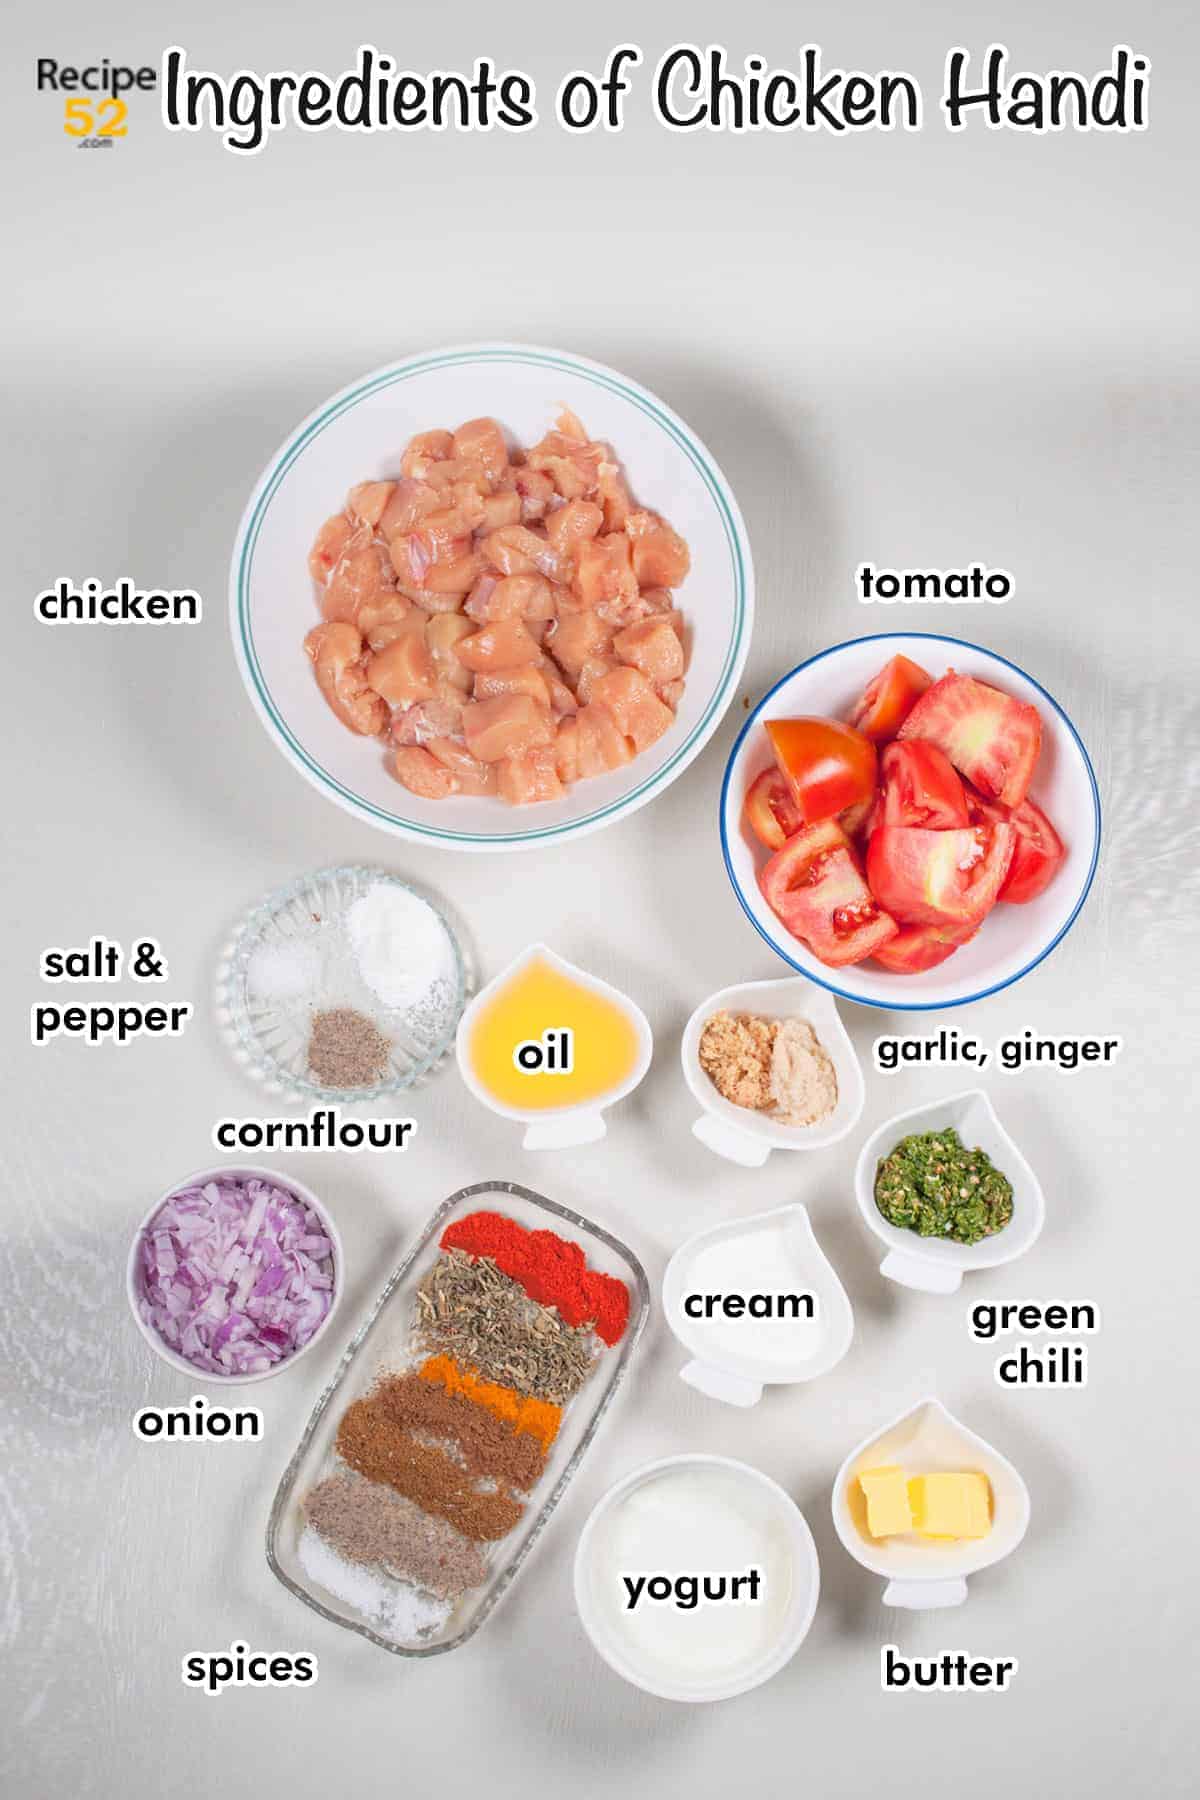 Ingredients of chicken handi.